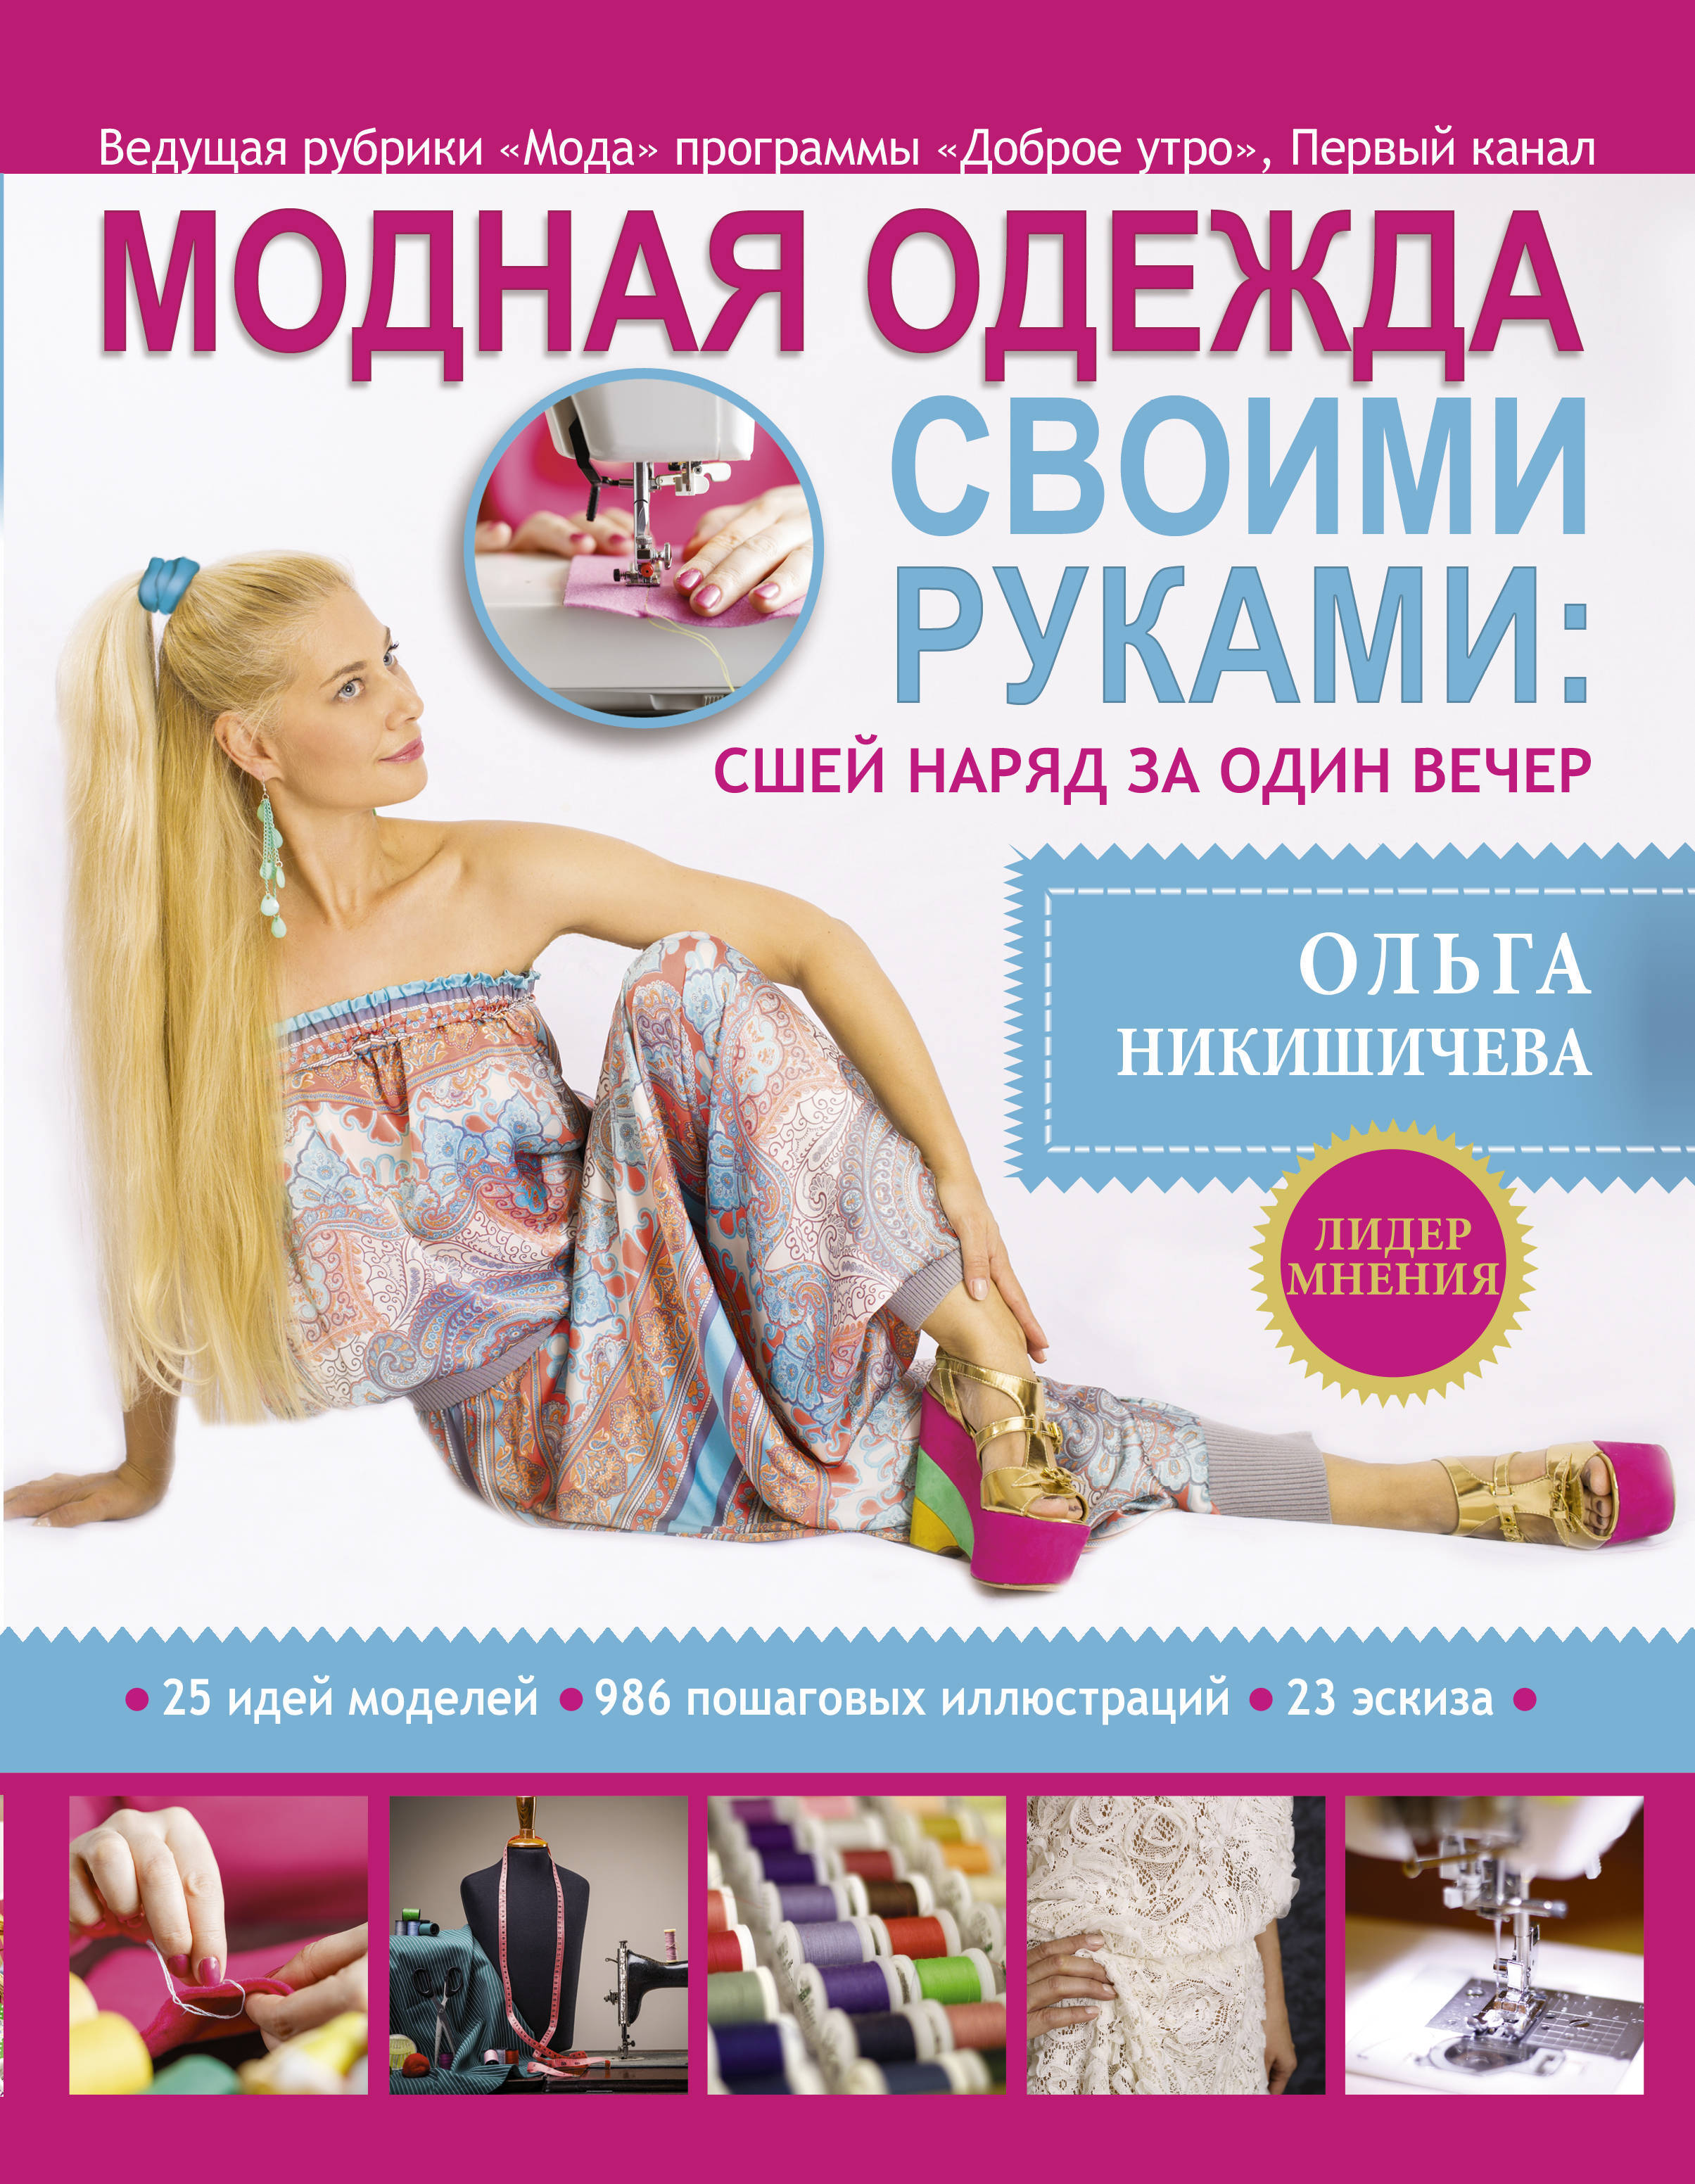 Ольга Никишичева показывает, как сшить простую и практичную юбку из хлопка с оригинальным принтом.